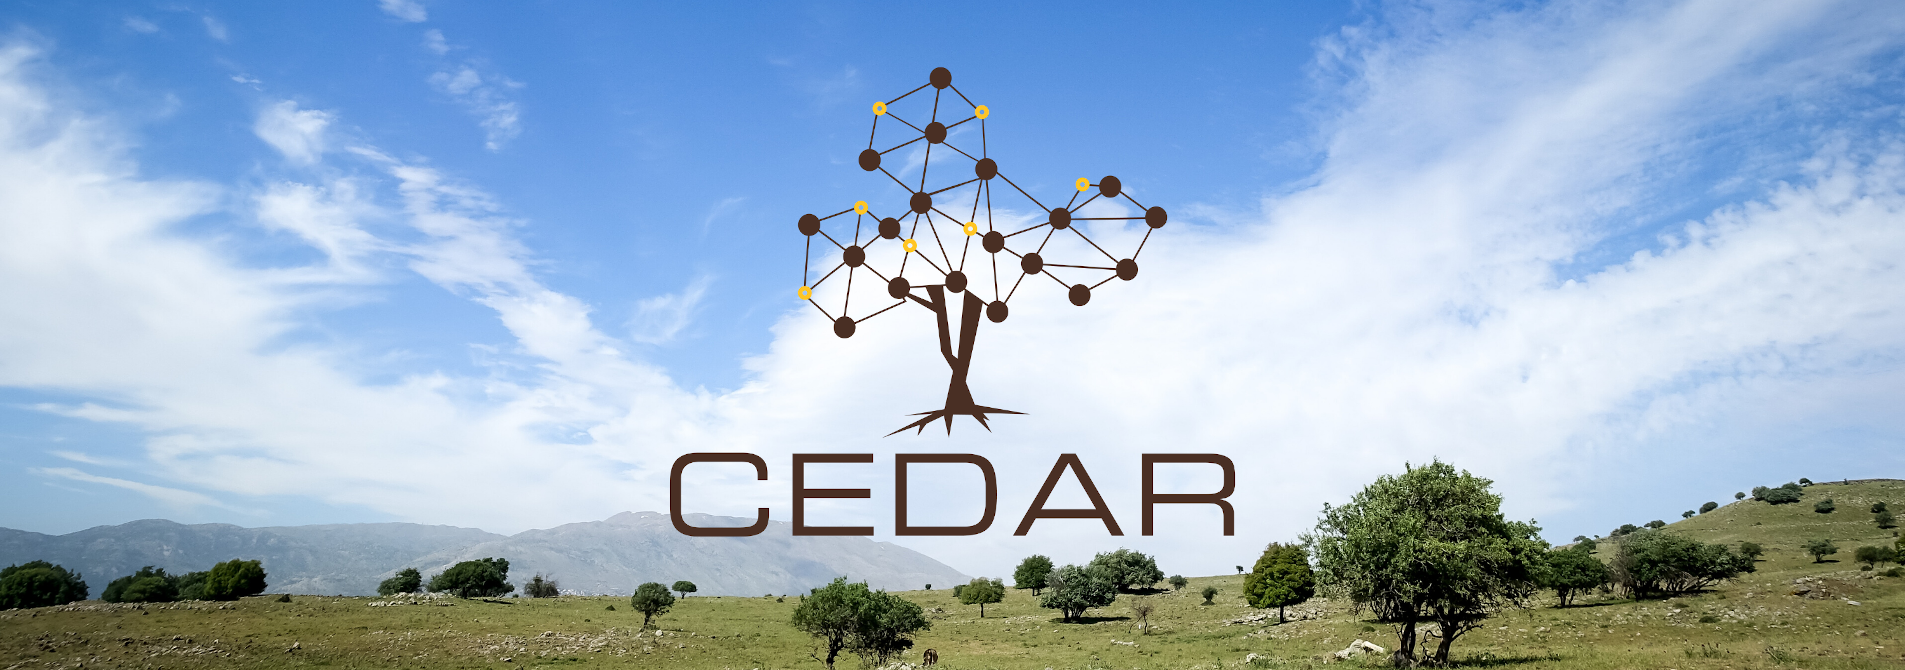 Cedar logo on a high mountain plain background